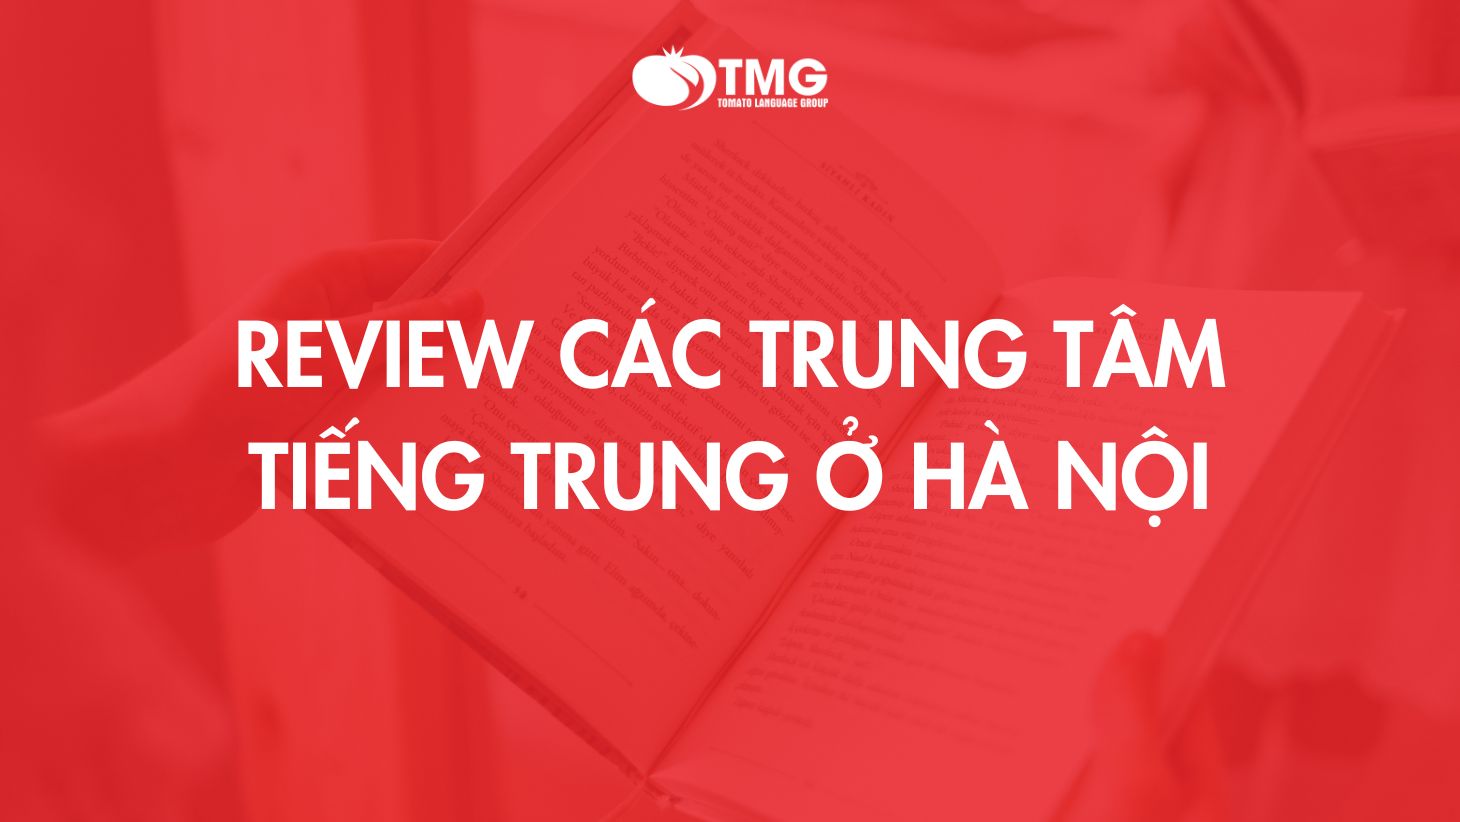 Review các trung tâm tiếng Trung ở Hà Nội